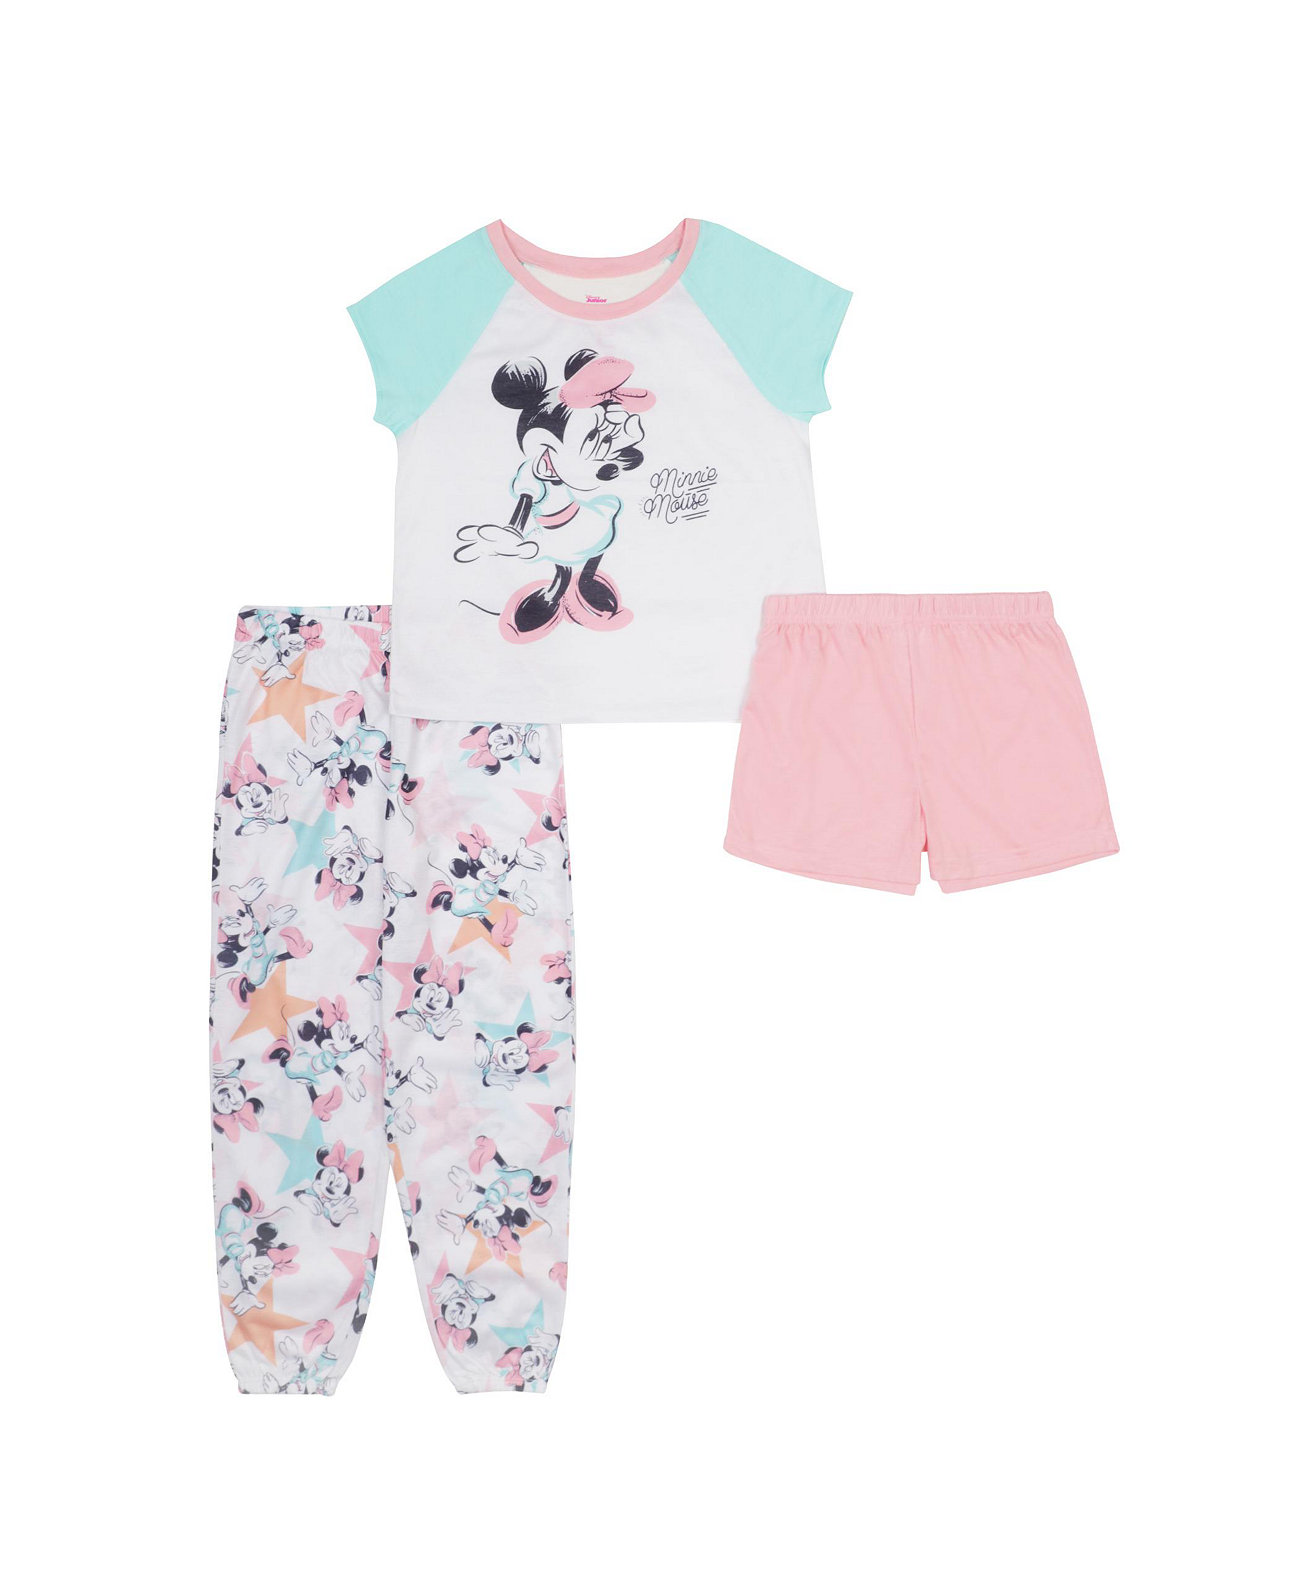 Пижамы с короткими рукавами для маленьких девочек, комплект из 3 предметов Minnie Mouse